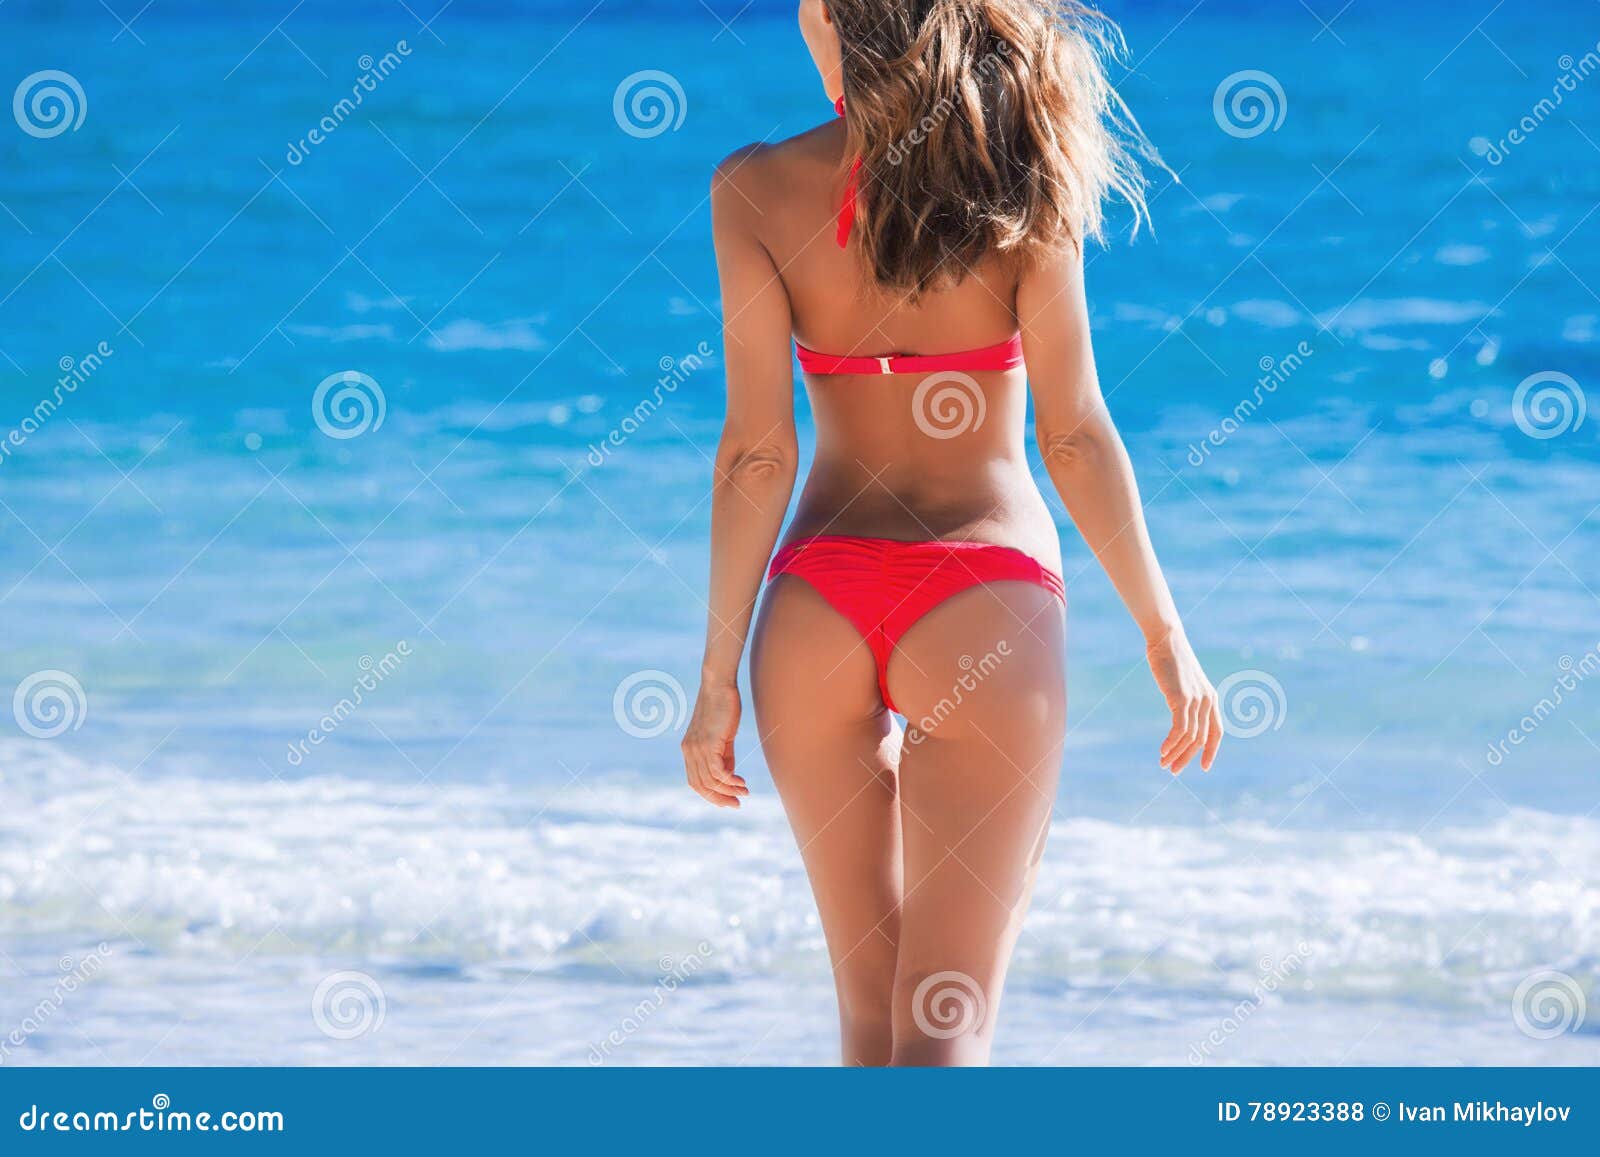 Пляжные Фото Женщин